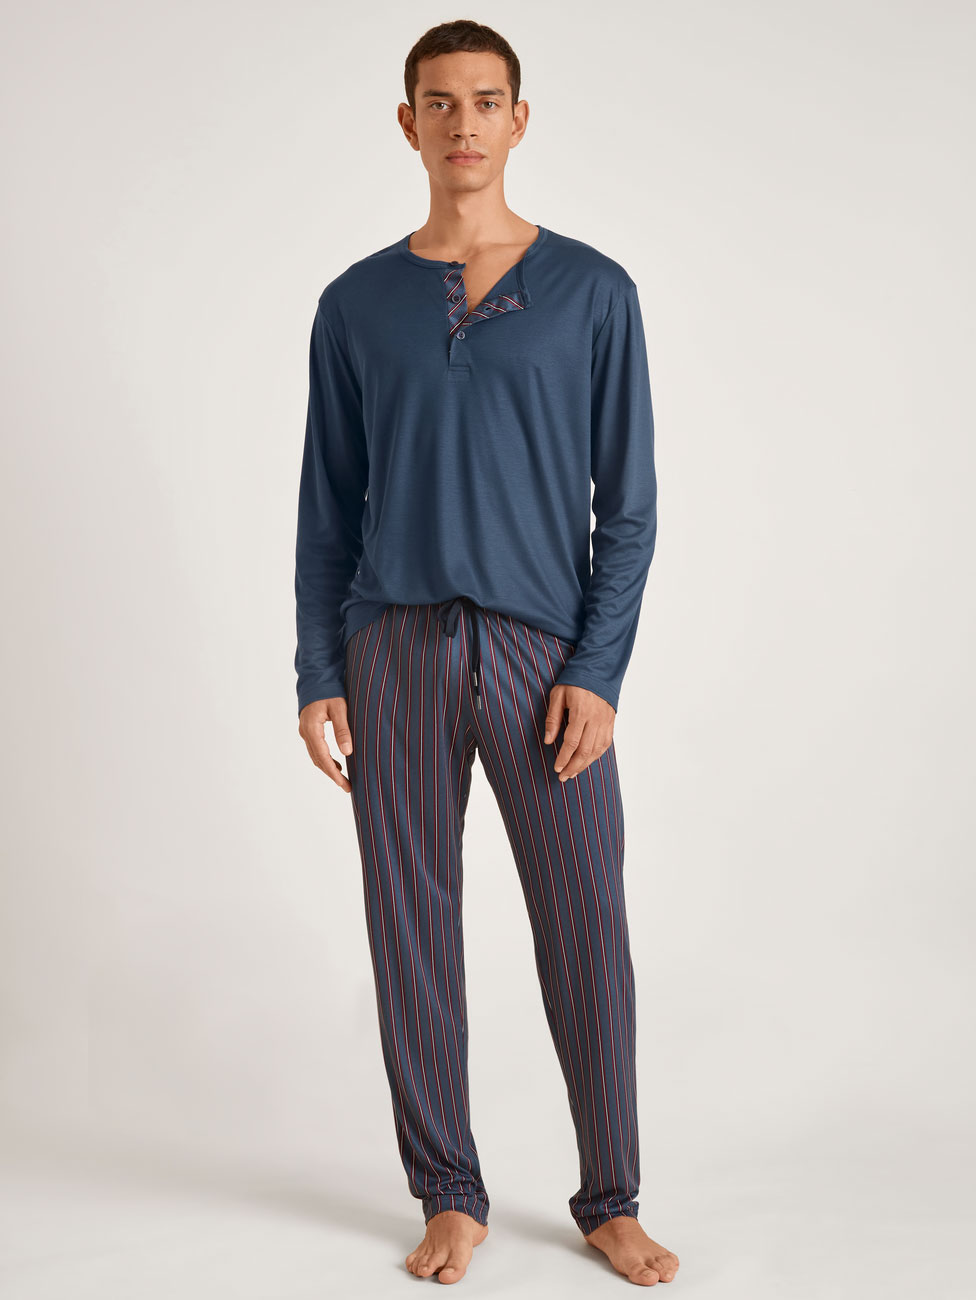 Пижама трикотажная с шелком (кофта, брюки) 49865 синий Calida рис. 1